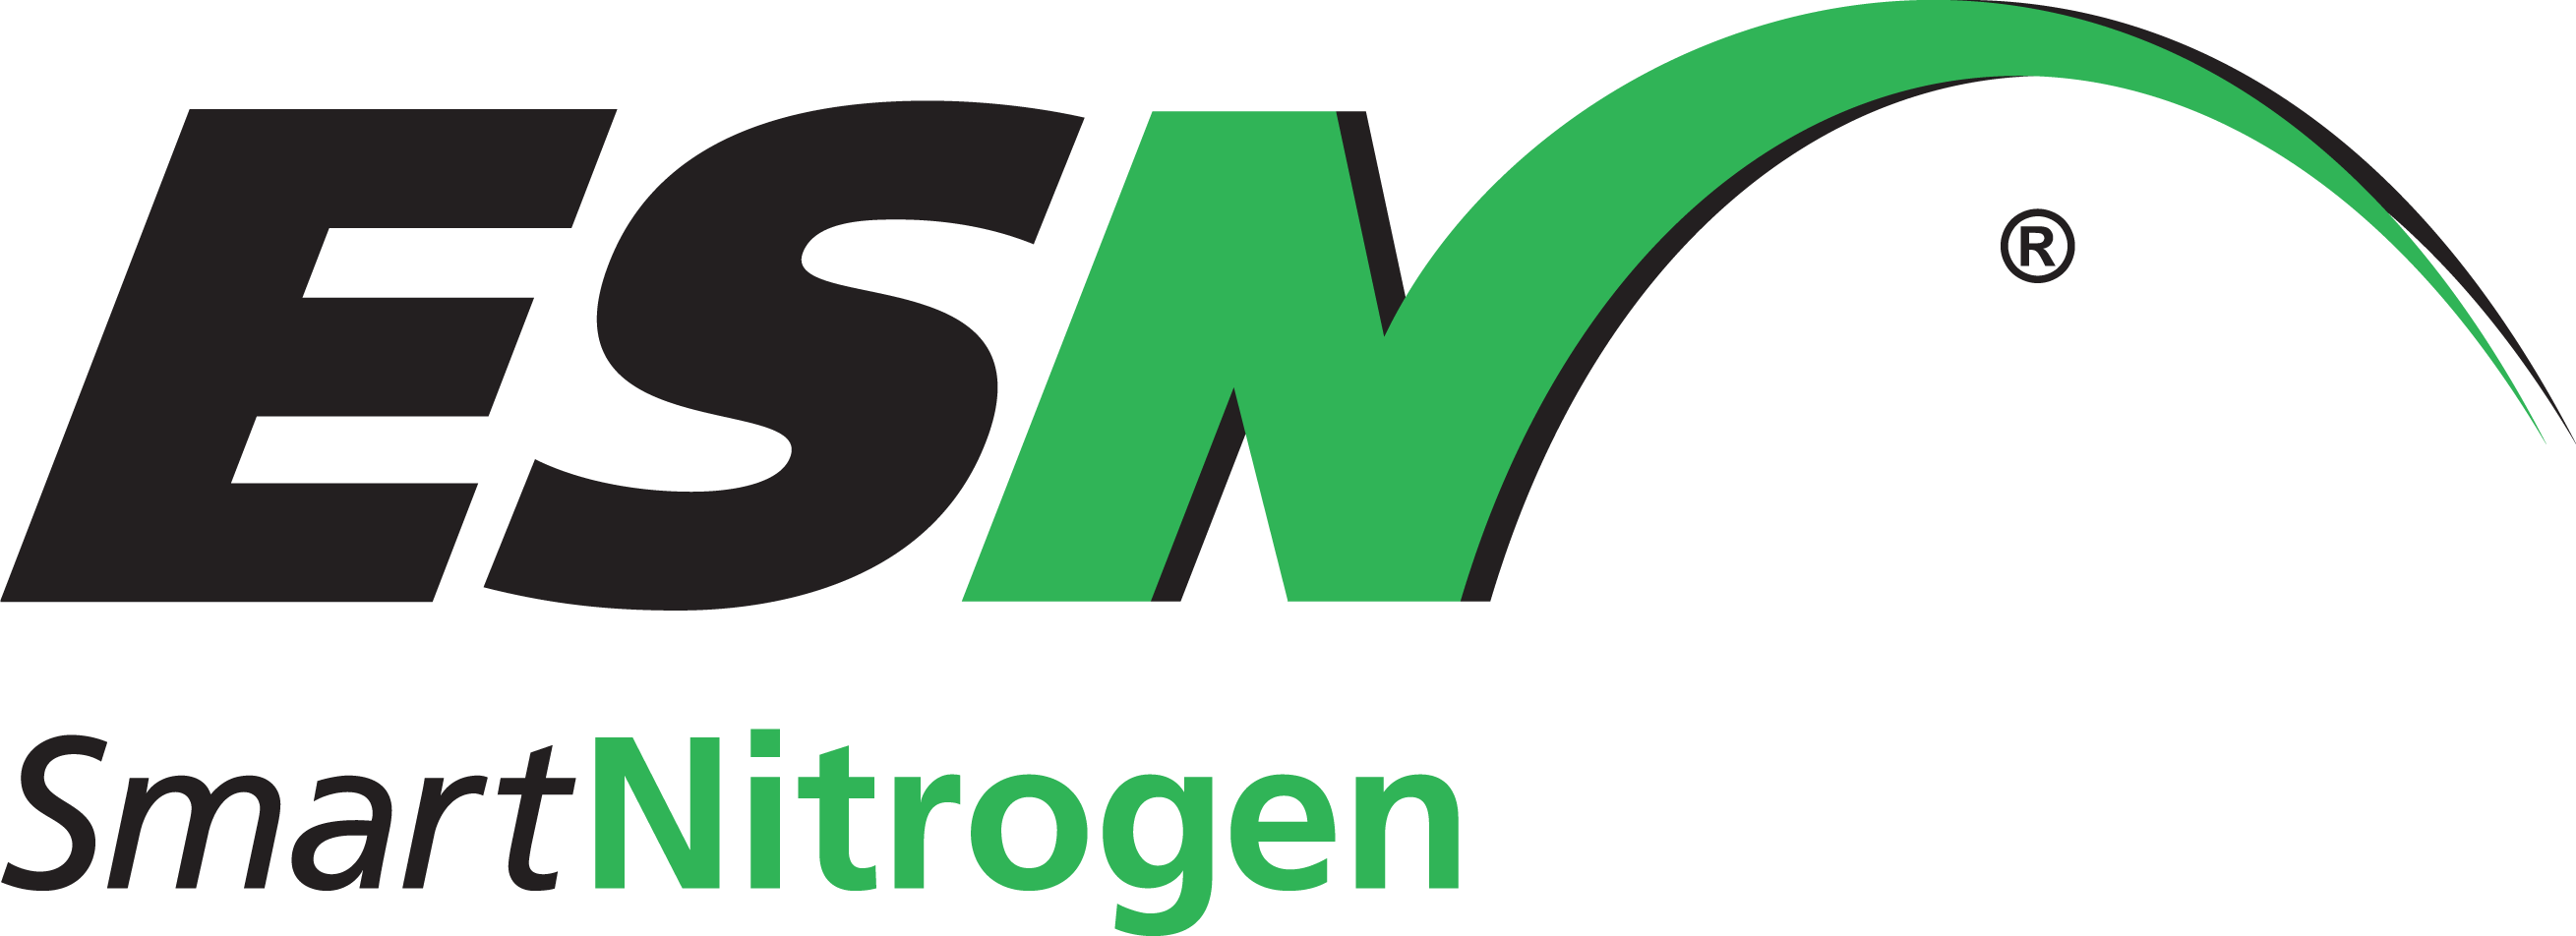 Nutrien Logo - Logos